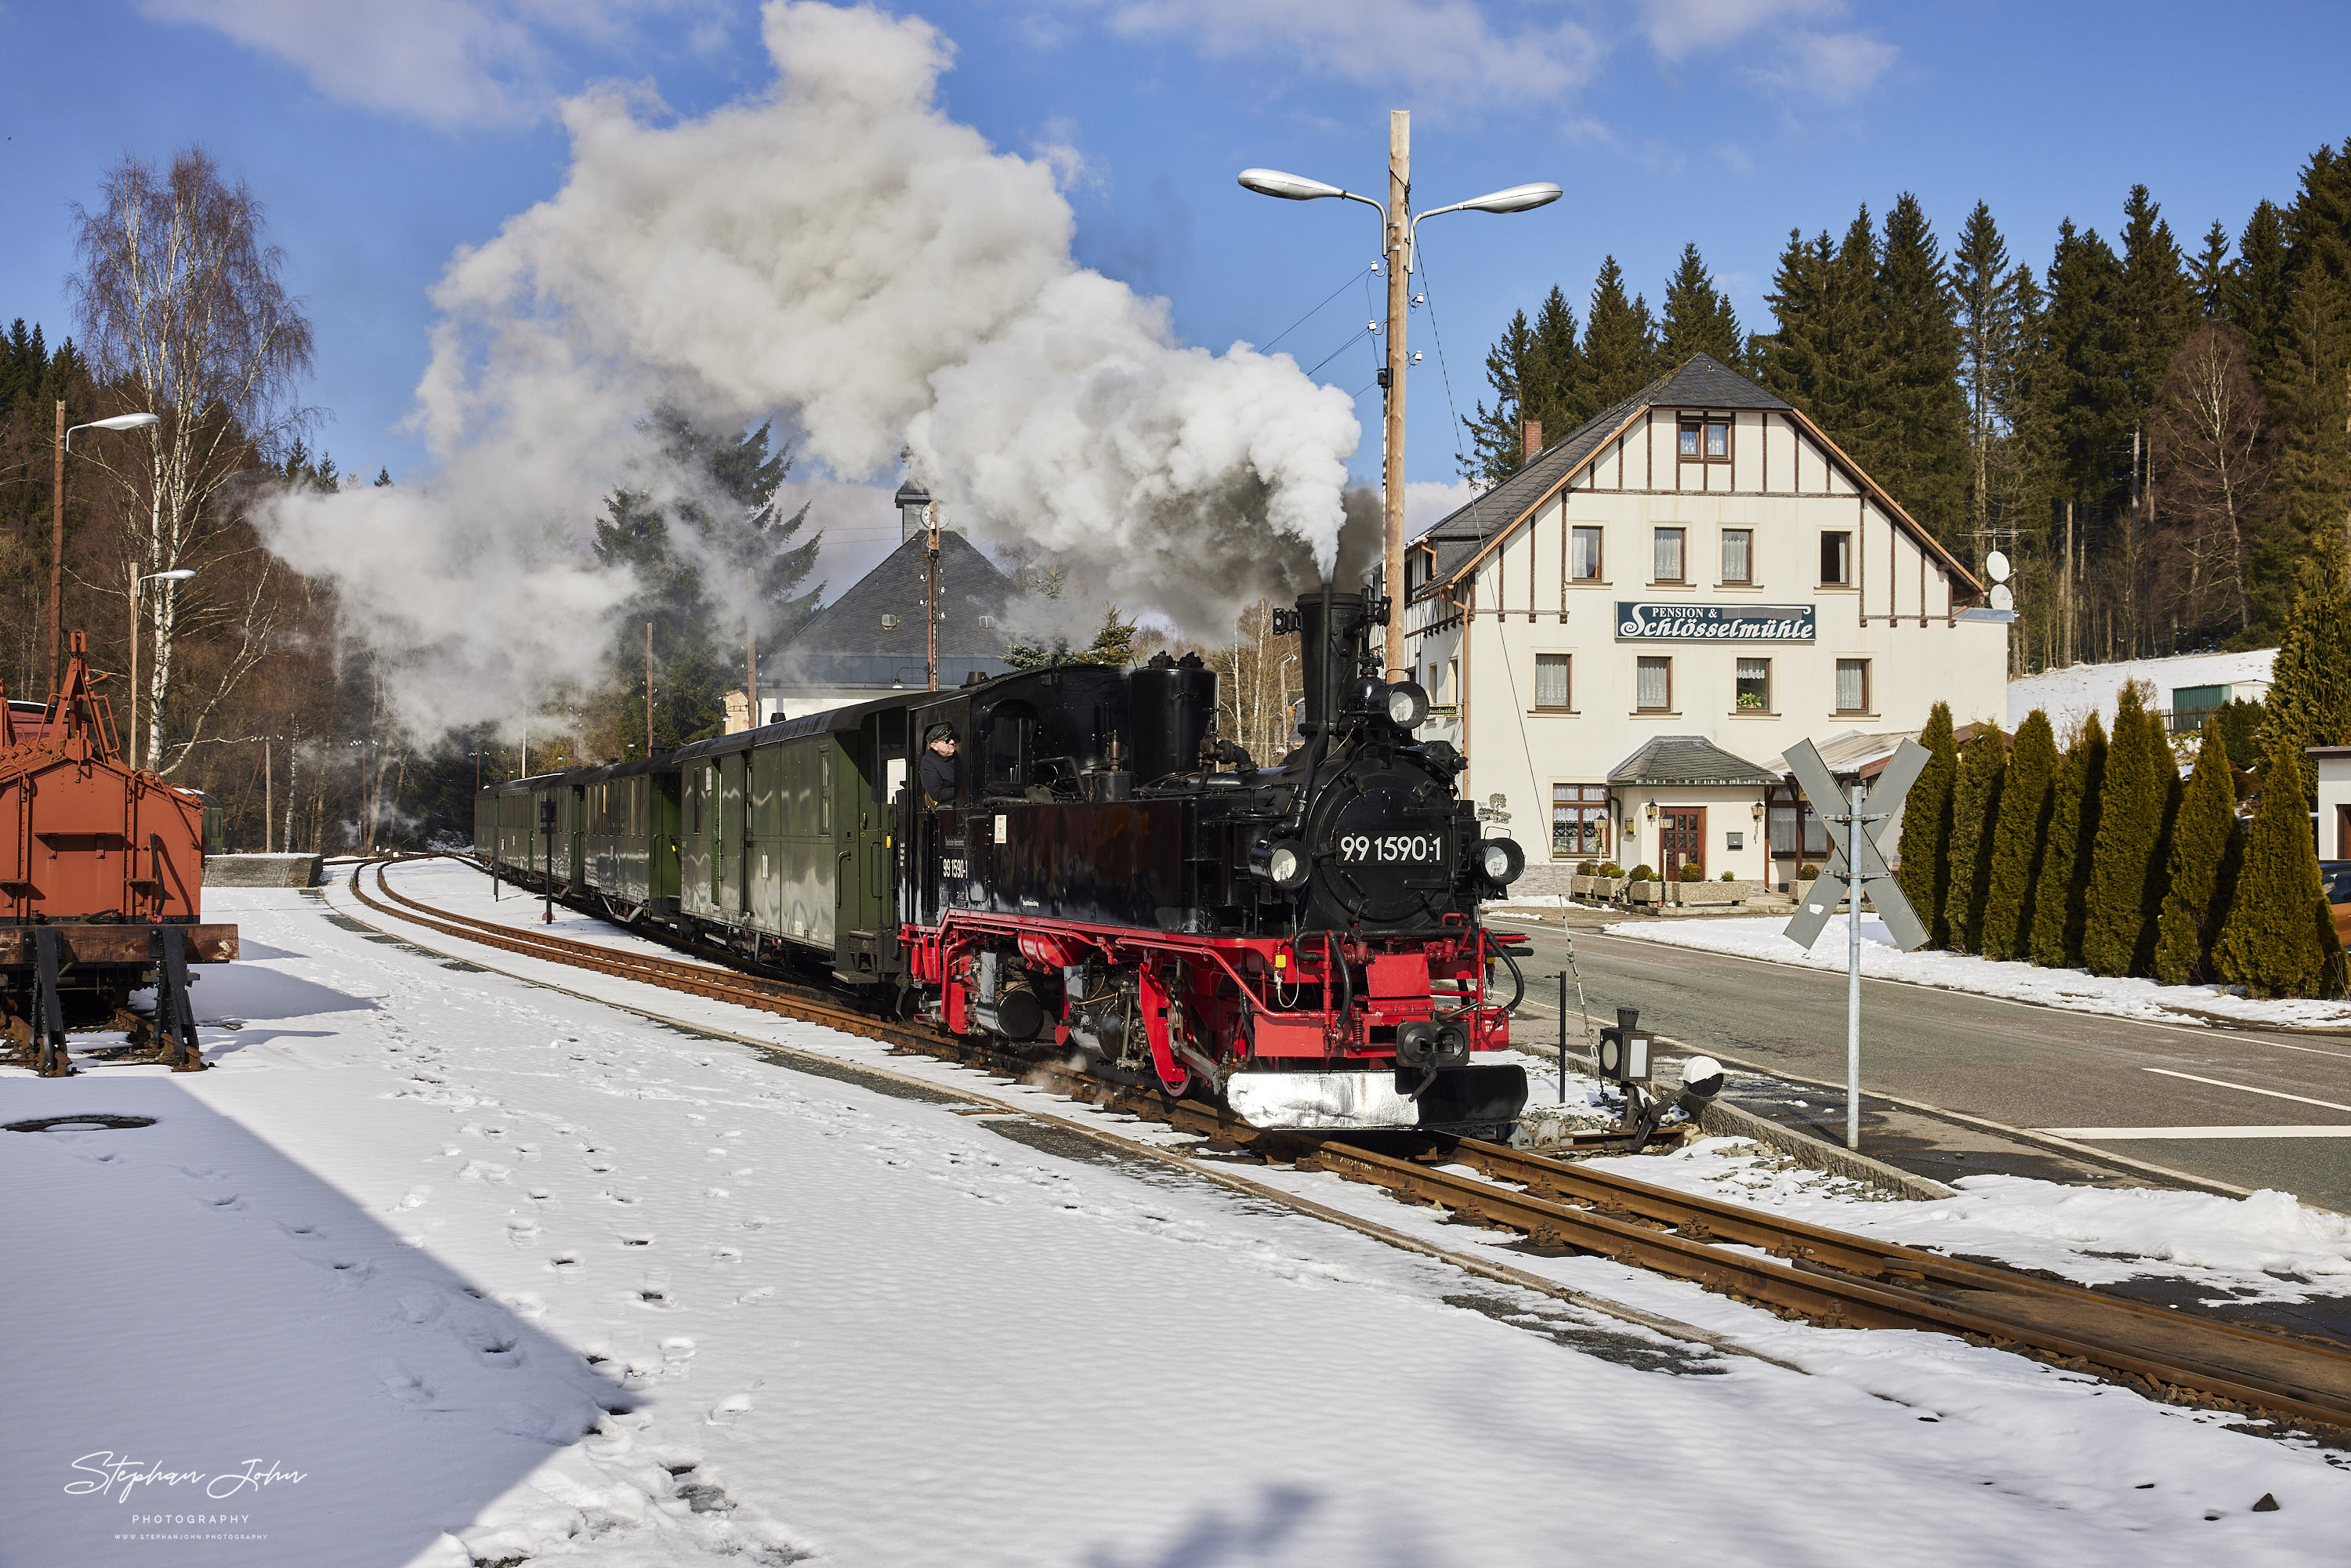 Ausfahrt des Zug 14113 mit Lok 99 1590-1 aus dem Bahnhof Schlössel